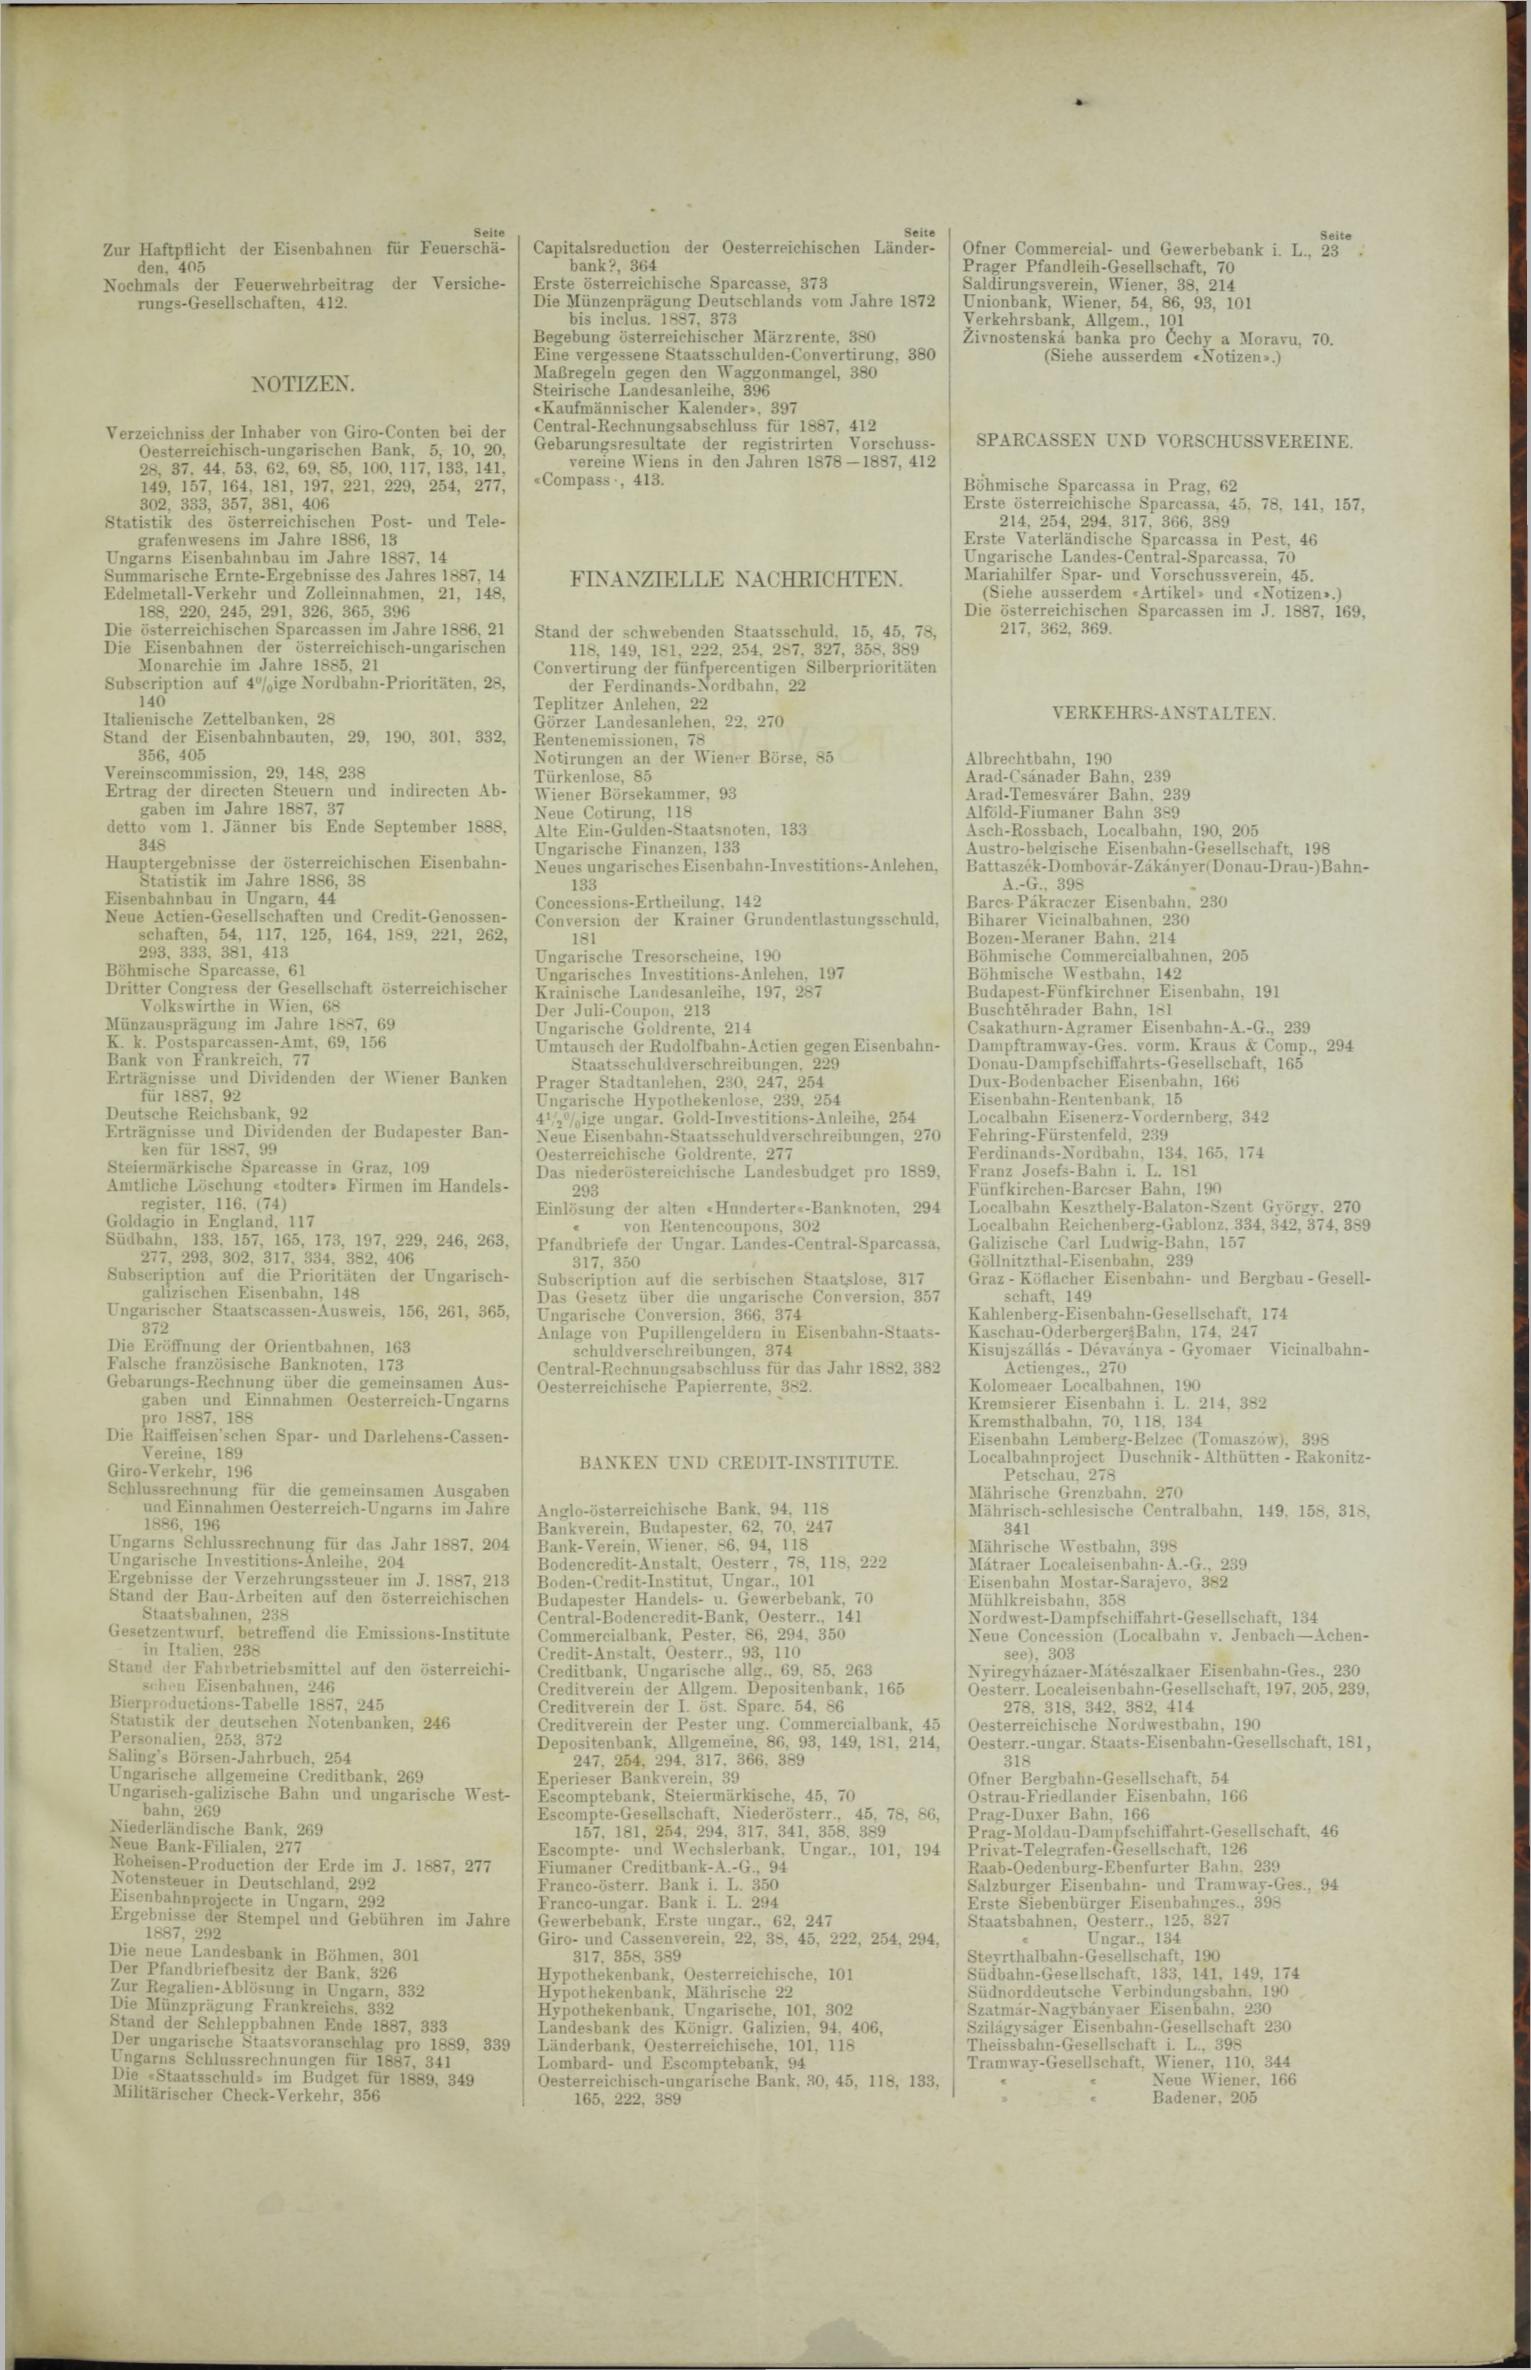 Der Tresor 30.08.1888 - Seite 11